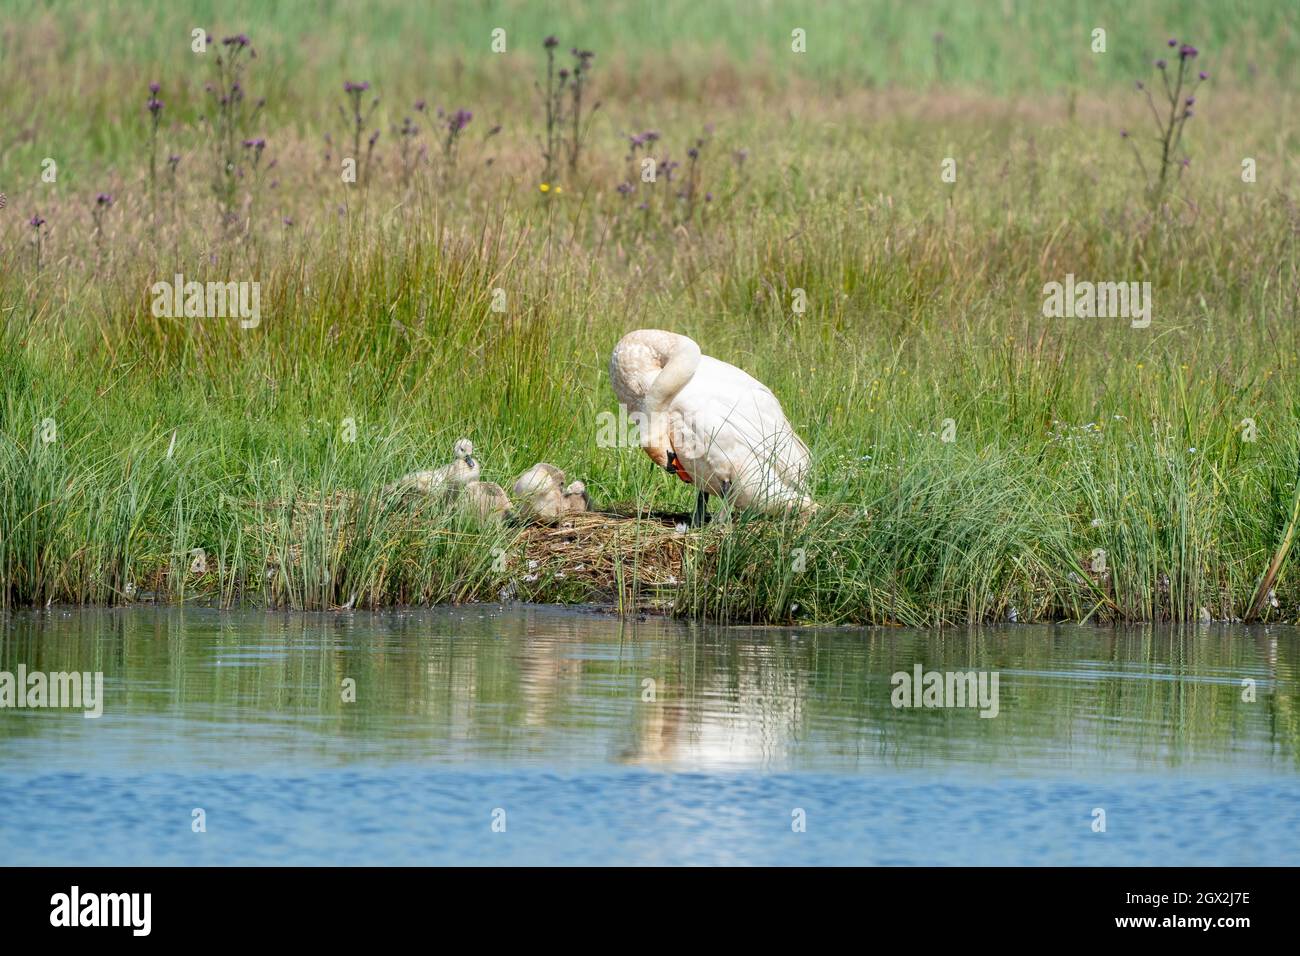 Giovani cigni grigi nell'erba lungo un lago. Madre cigno si trova accanto ad esso, con riflesso nell'acqua blu. Pulcini, animali giovani, cigni giovani. Foto Stock